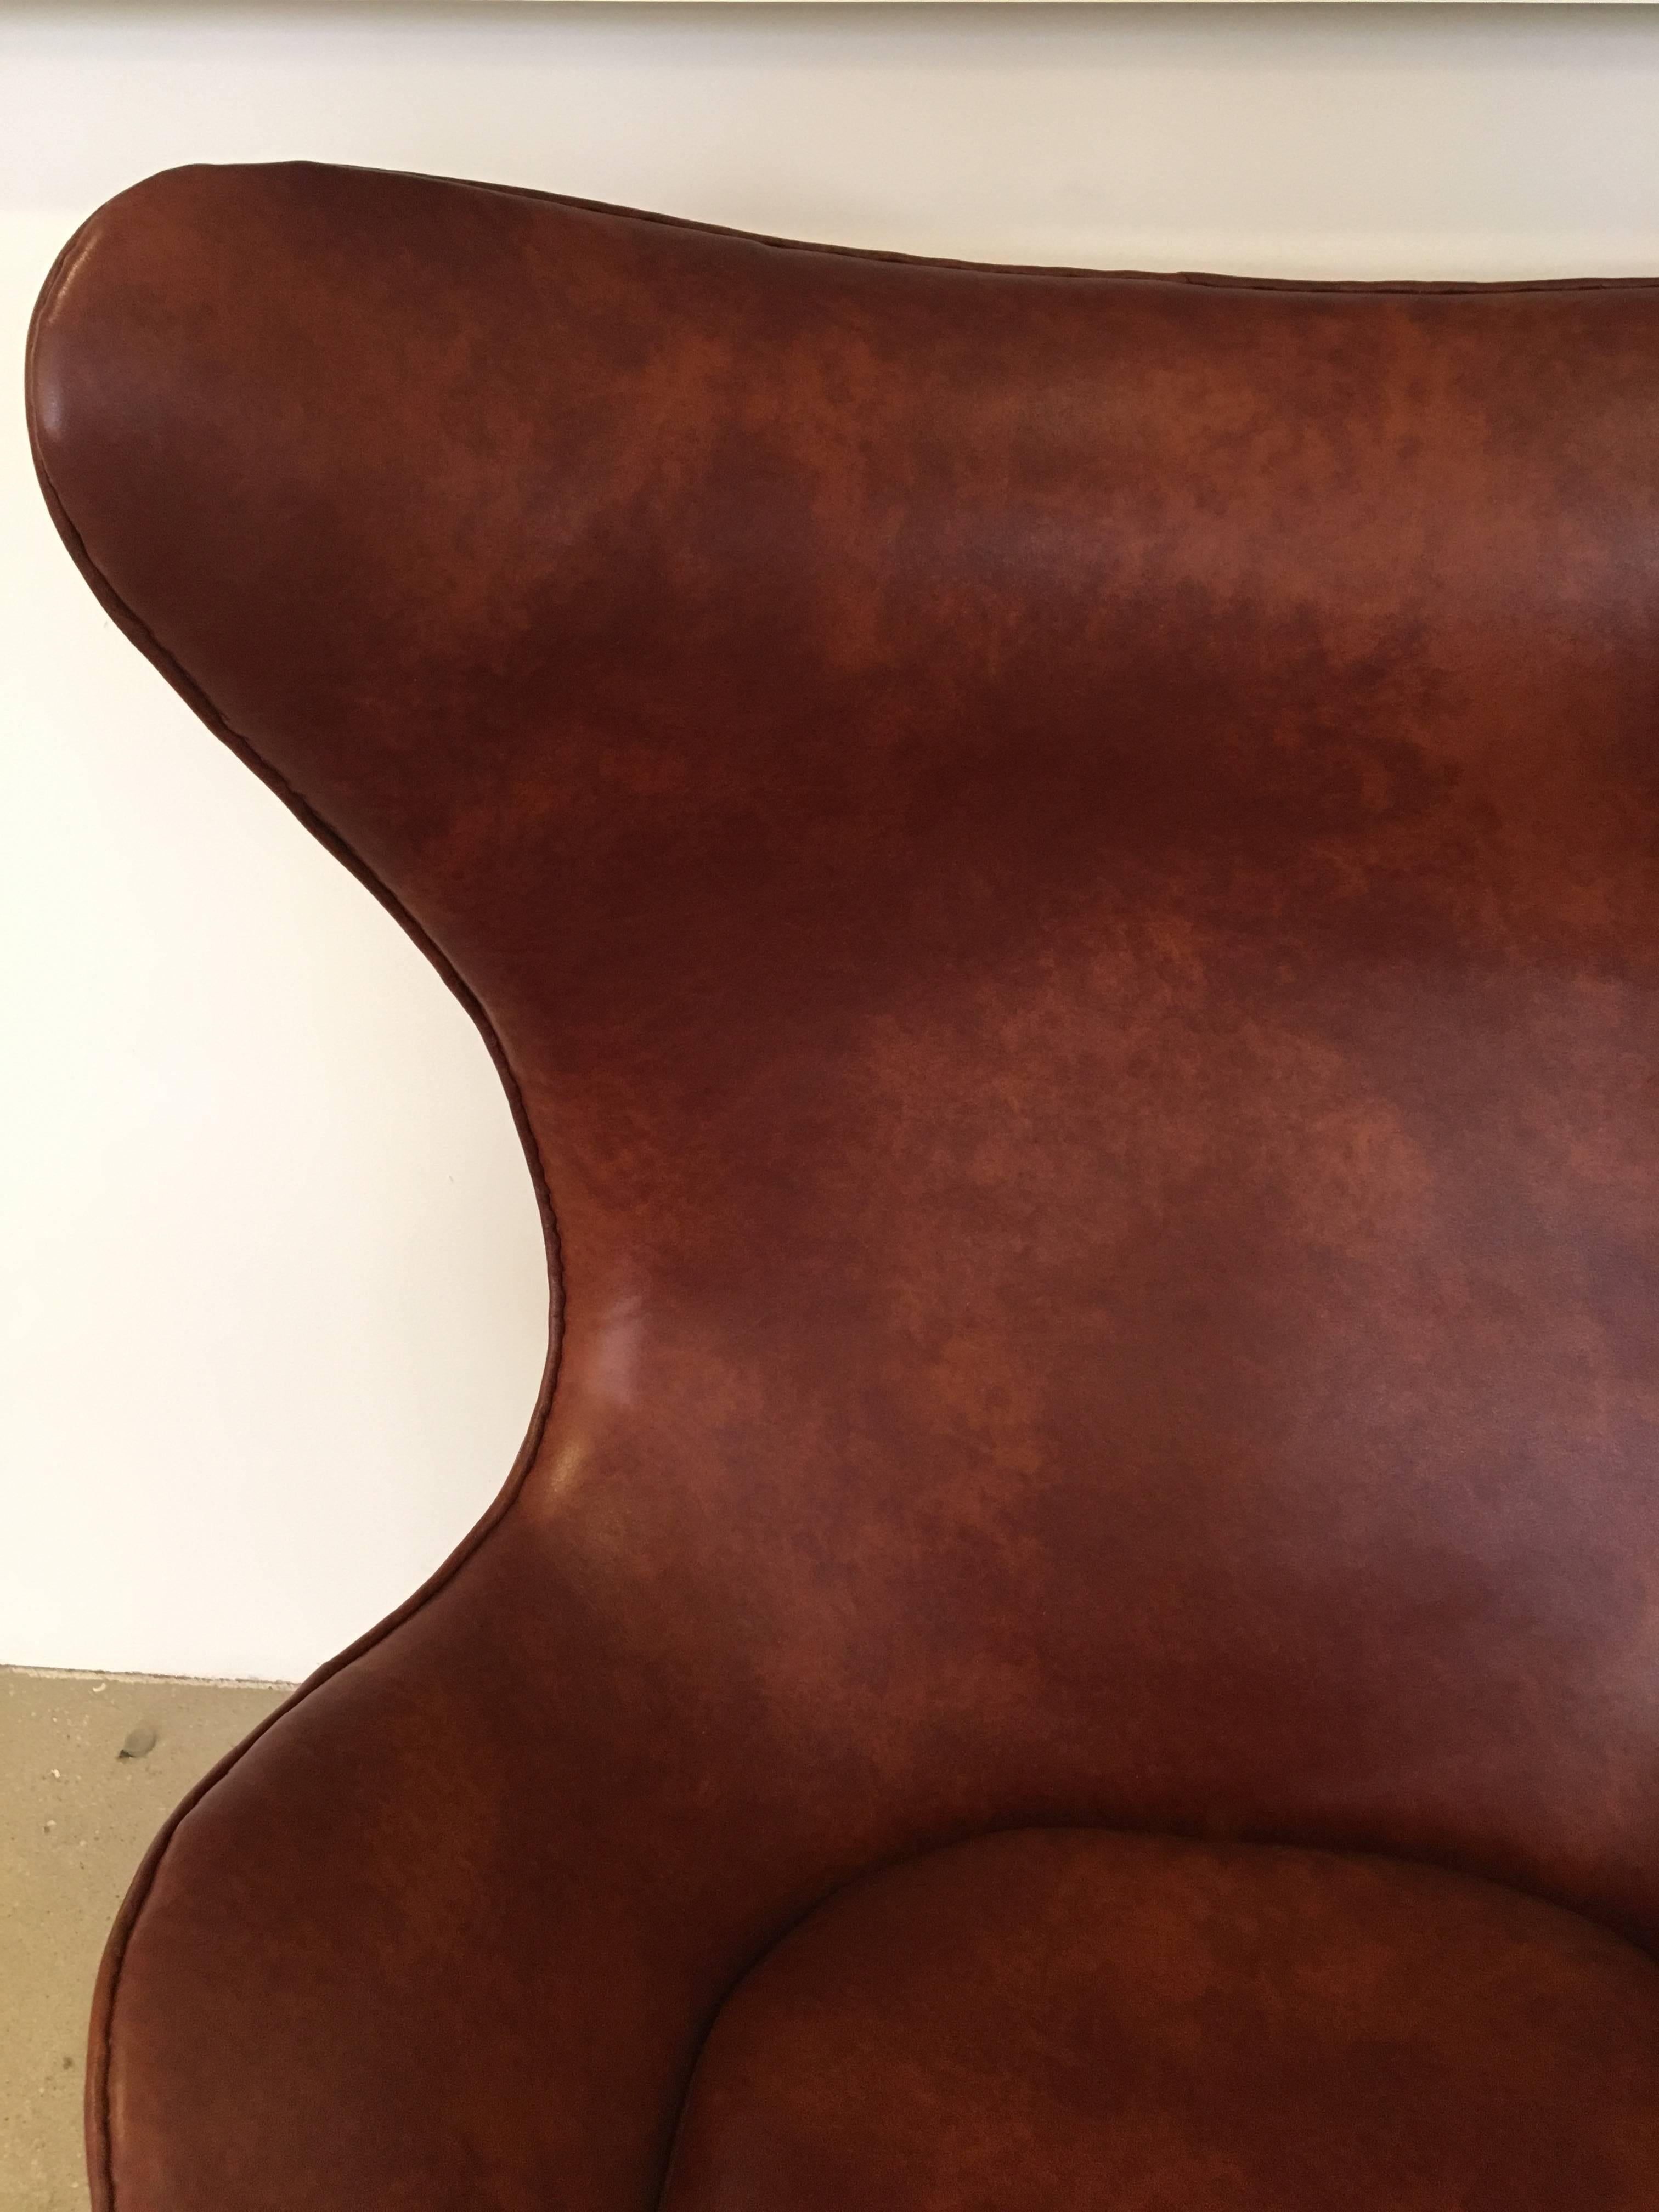 Arne Jacobsen Egg Chair Produziert von Fritz Hansen:: 1965 (Aluminium)